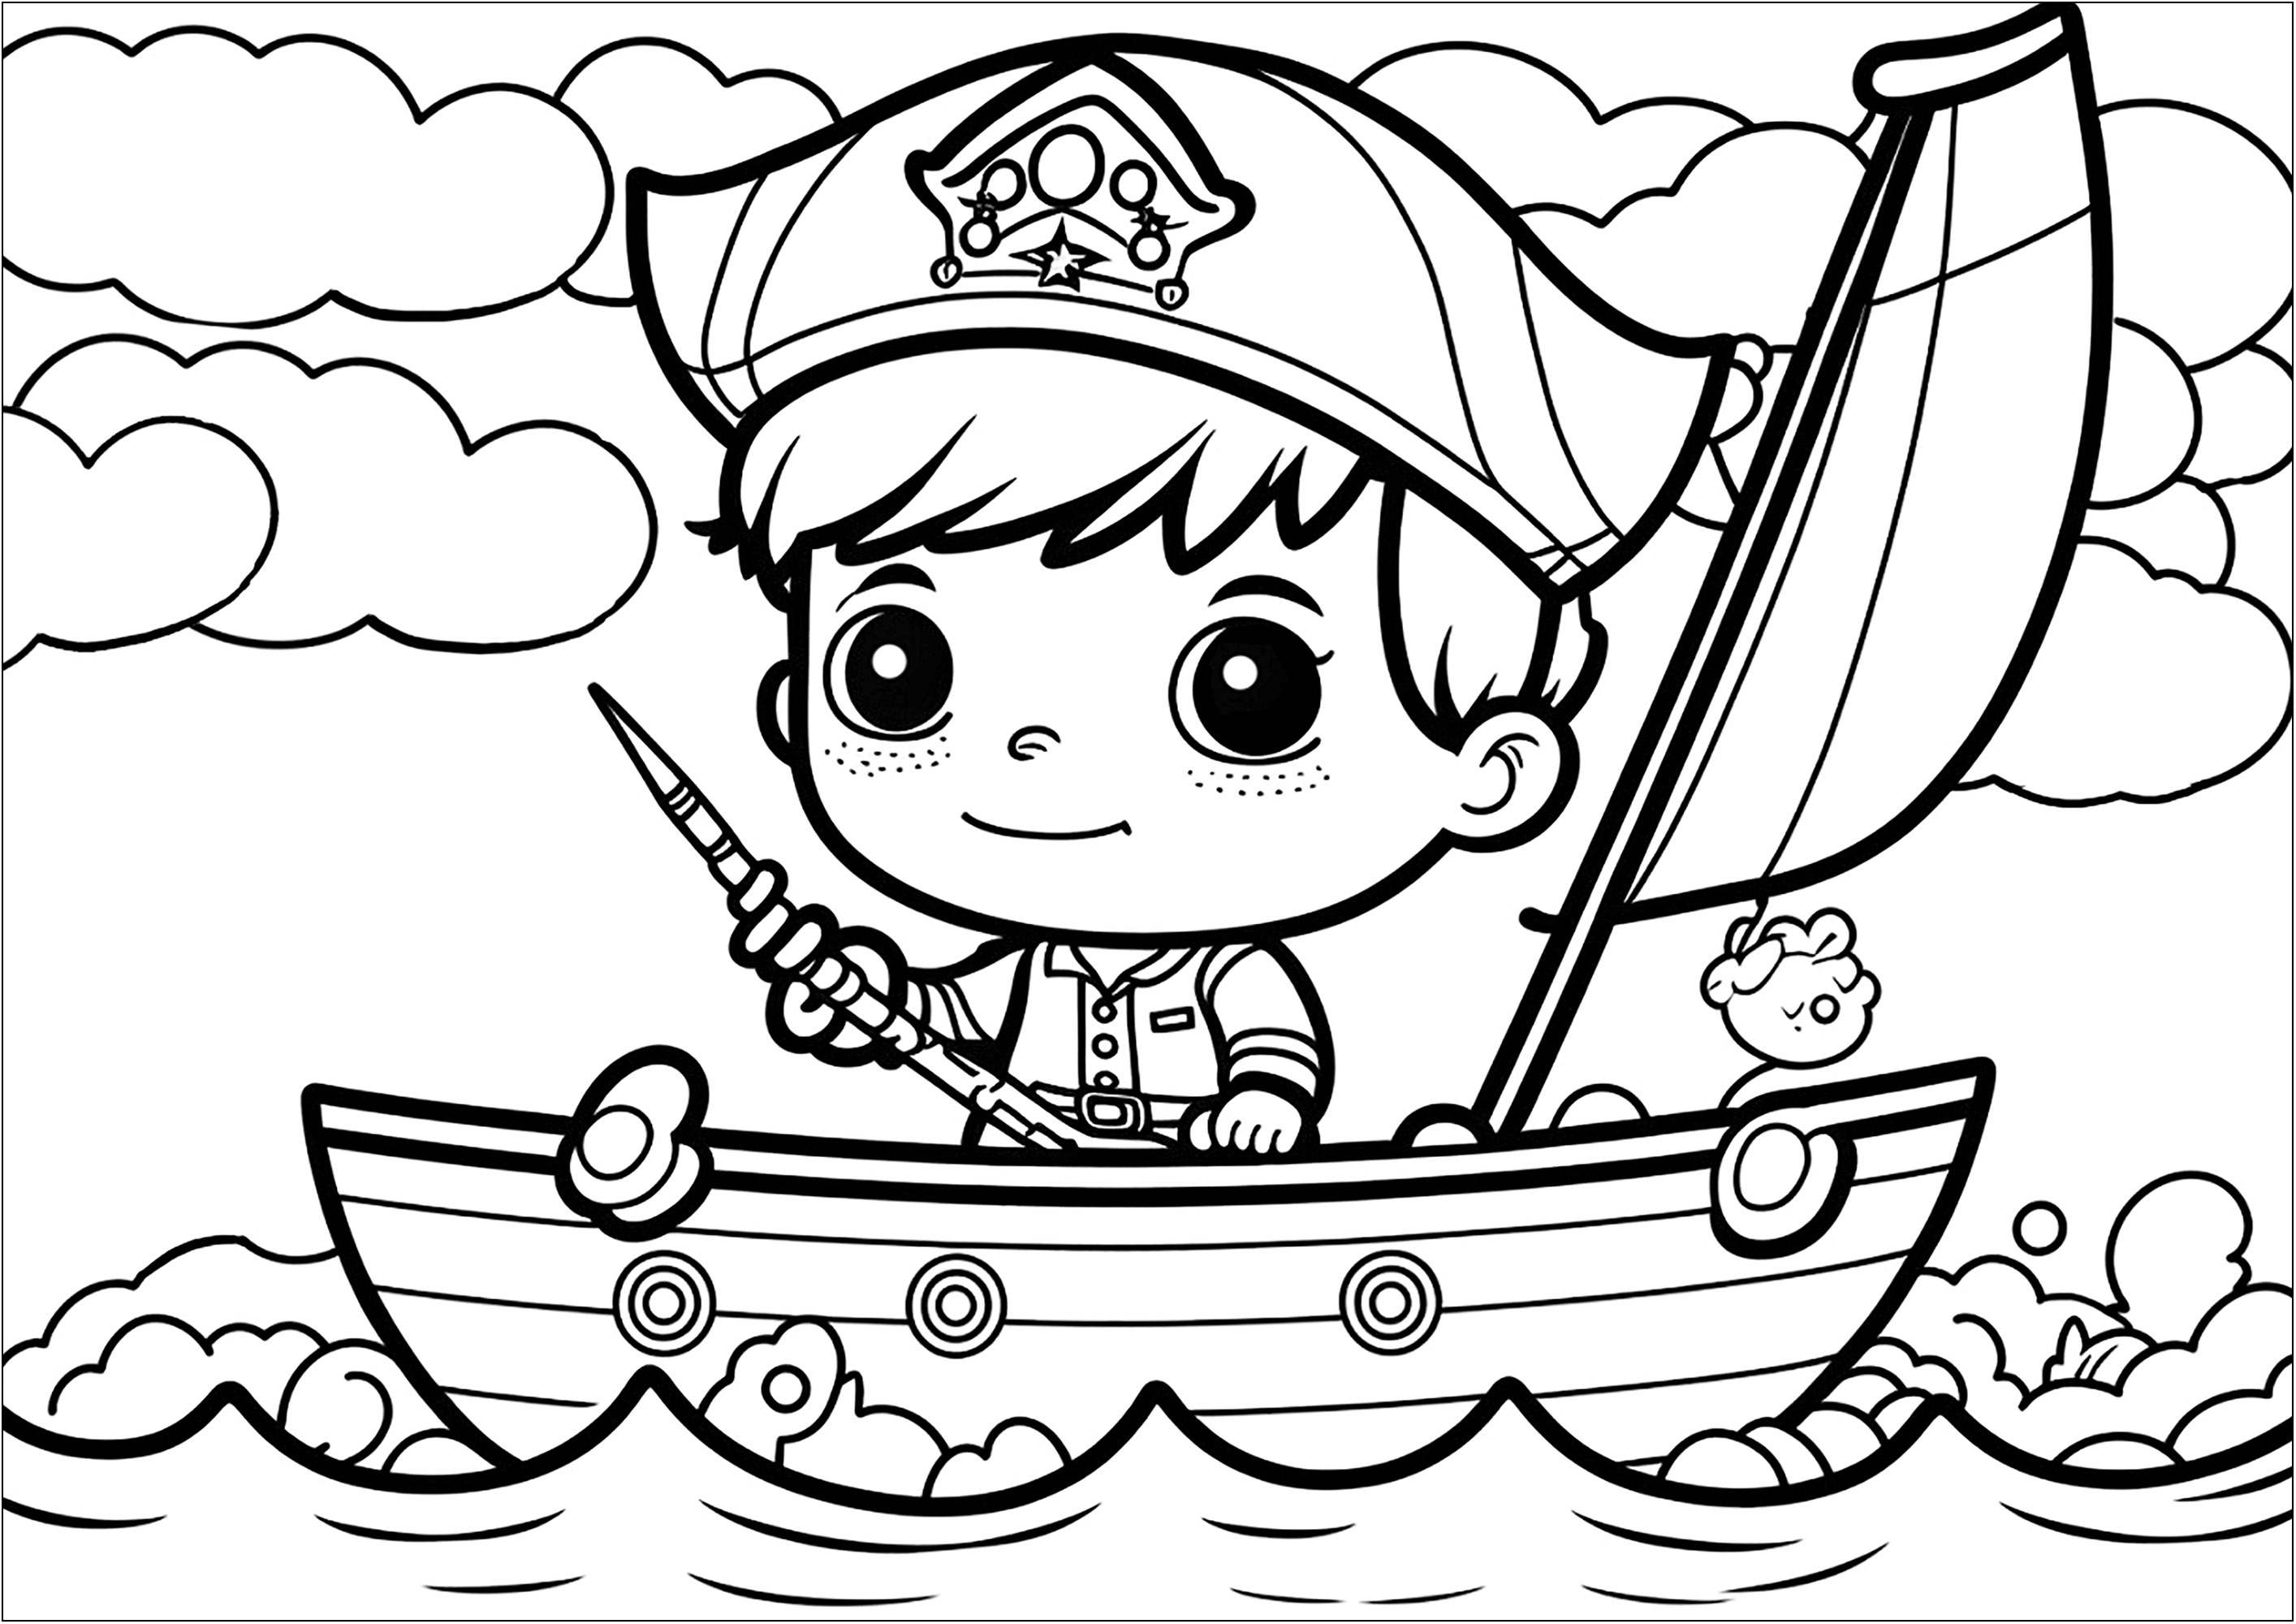 Página para colorear de un pirata de estilo kawaii en su barco. ¡Esta página para colorear es perfecta para los niños a los que les gusten los Piratas y el estilo Kawaii! El dibujo muestra a un pequeño pirata sonriendo encima de su barco.